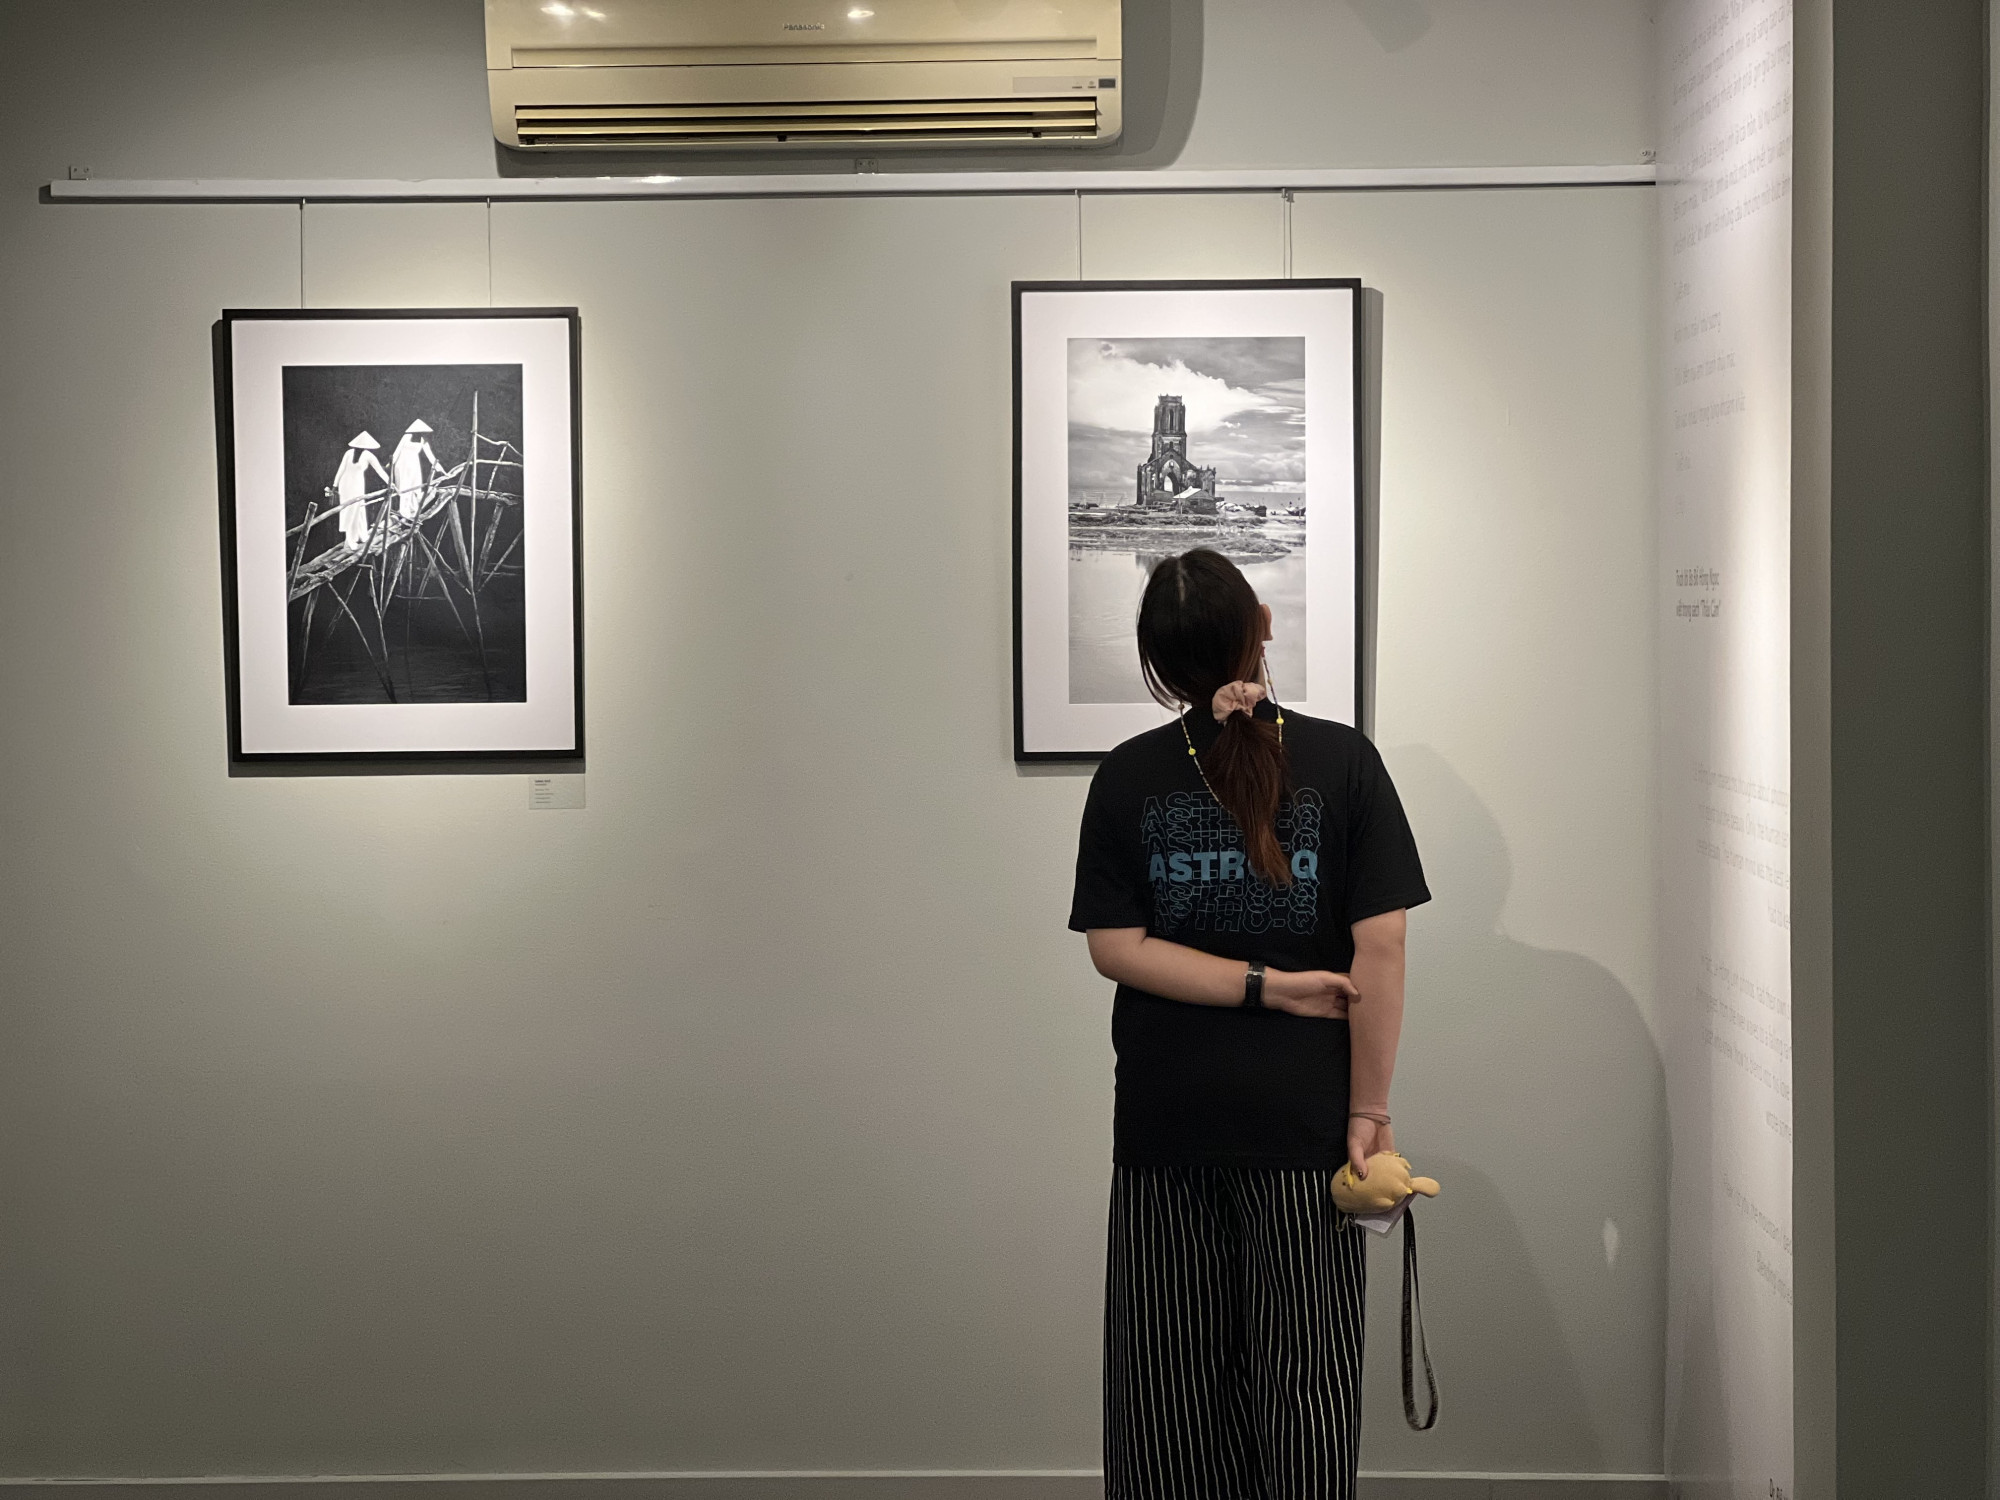 Tại triển lãm, có 2 bức ảnh của Lê Hồng Linh từng được quốc tế vinh danh là những kiệt tác của nhiếp ảnh thế giới.